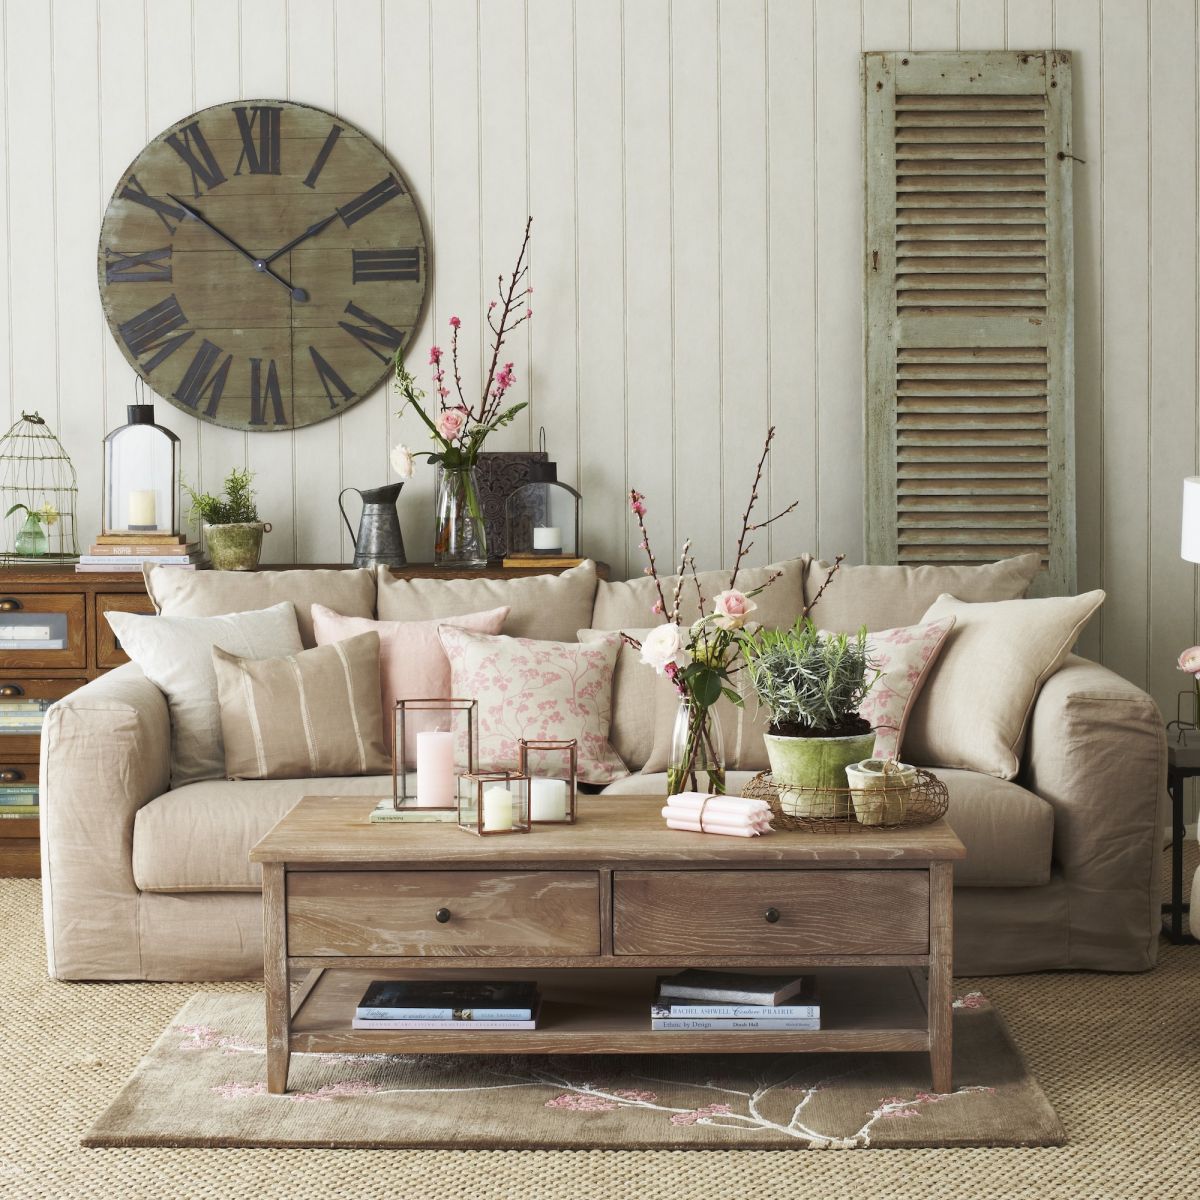 arredamento rustico moderno divano beige in soggiorno